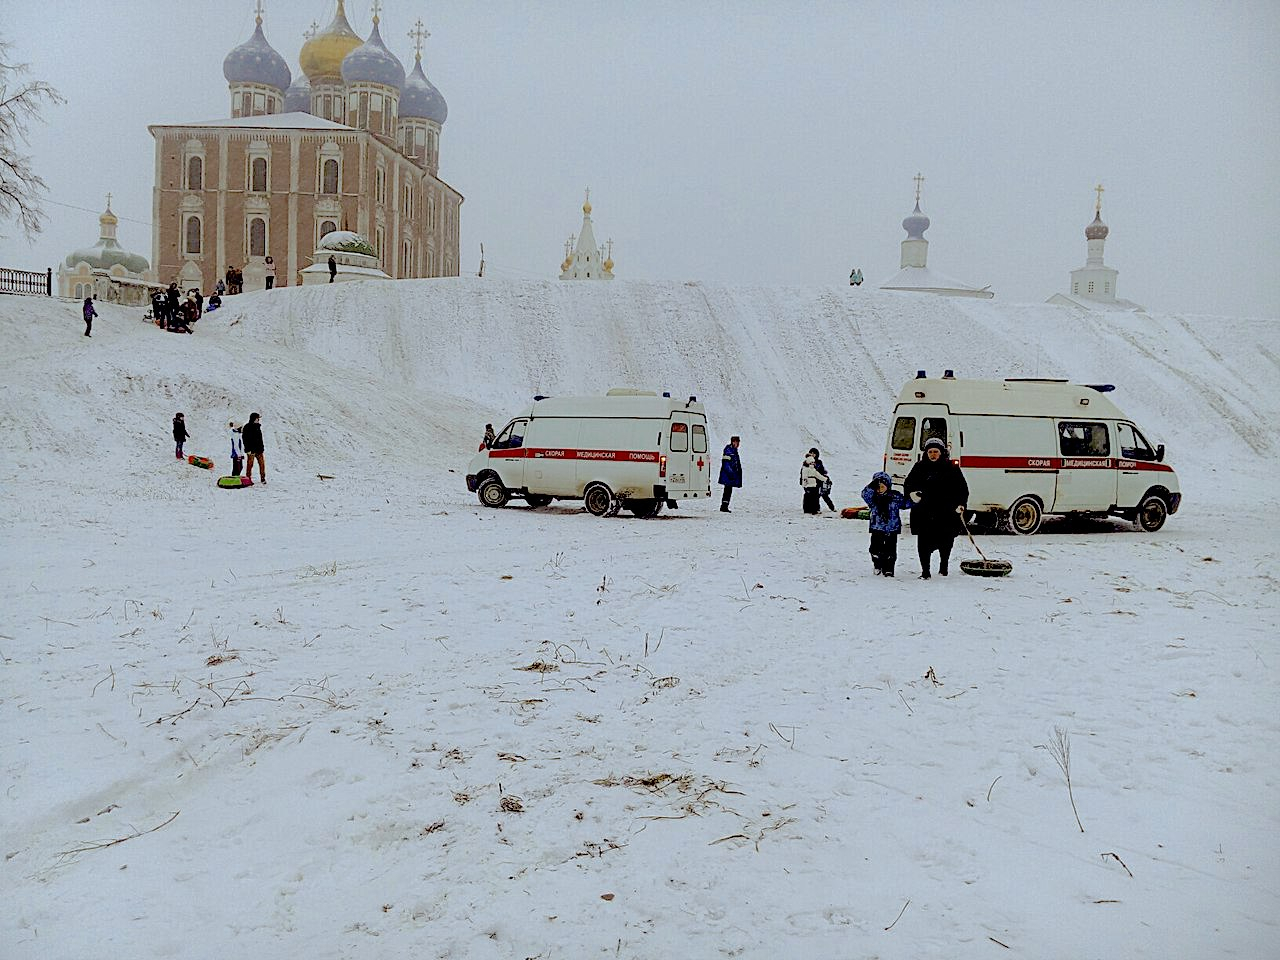 Опасный кремлевский вал: во время катания пострадали женщина и ребенок